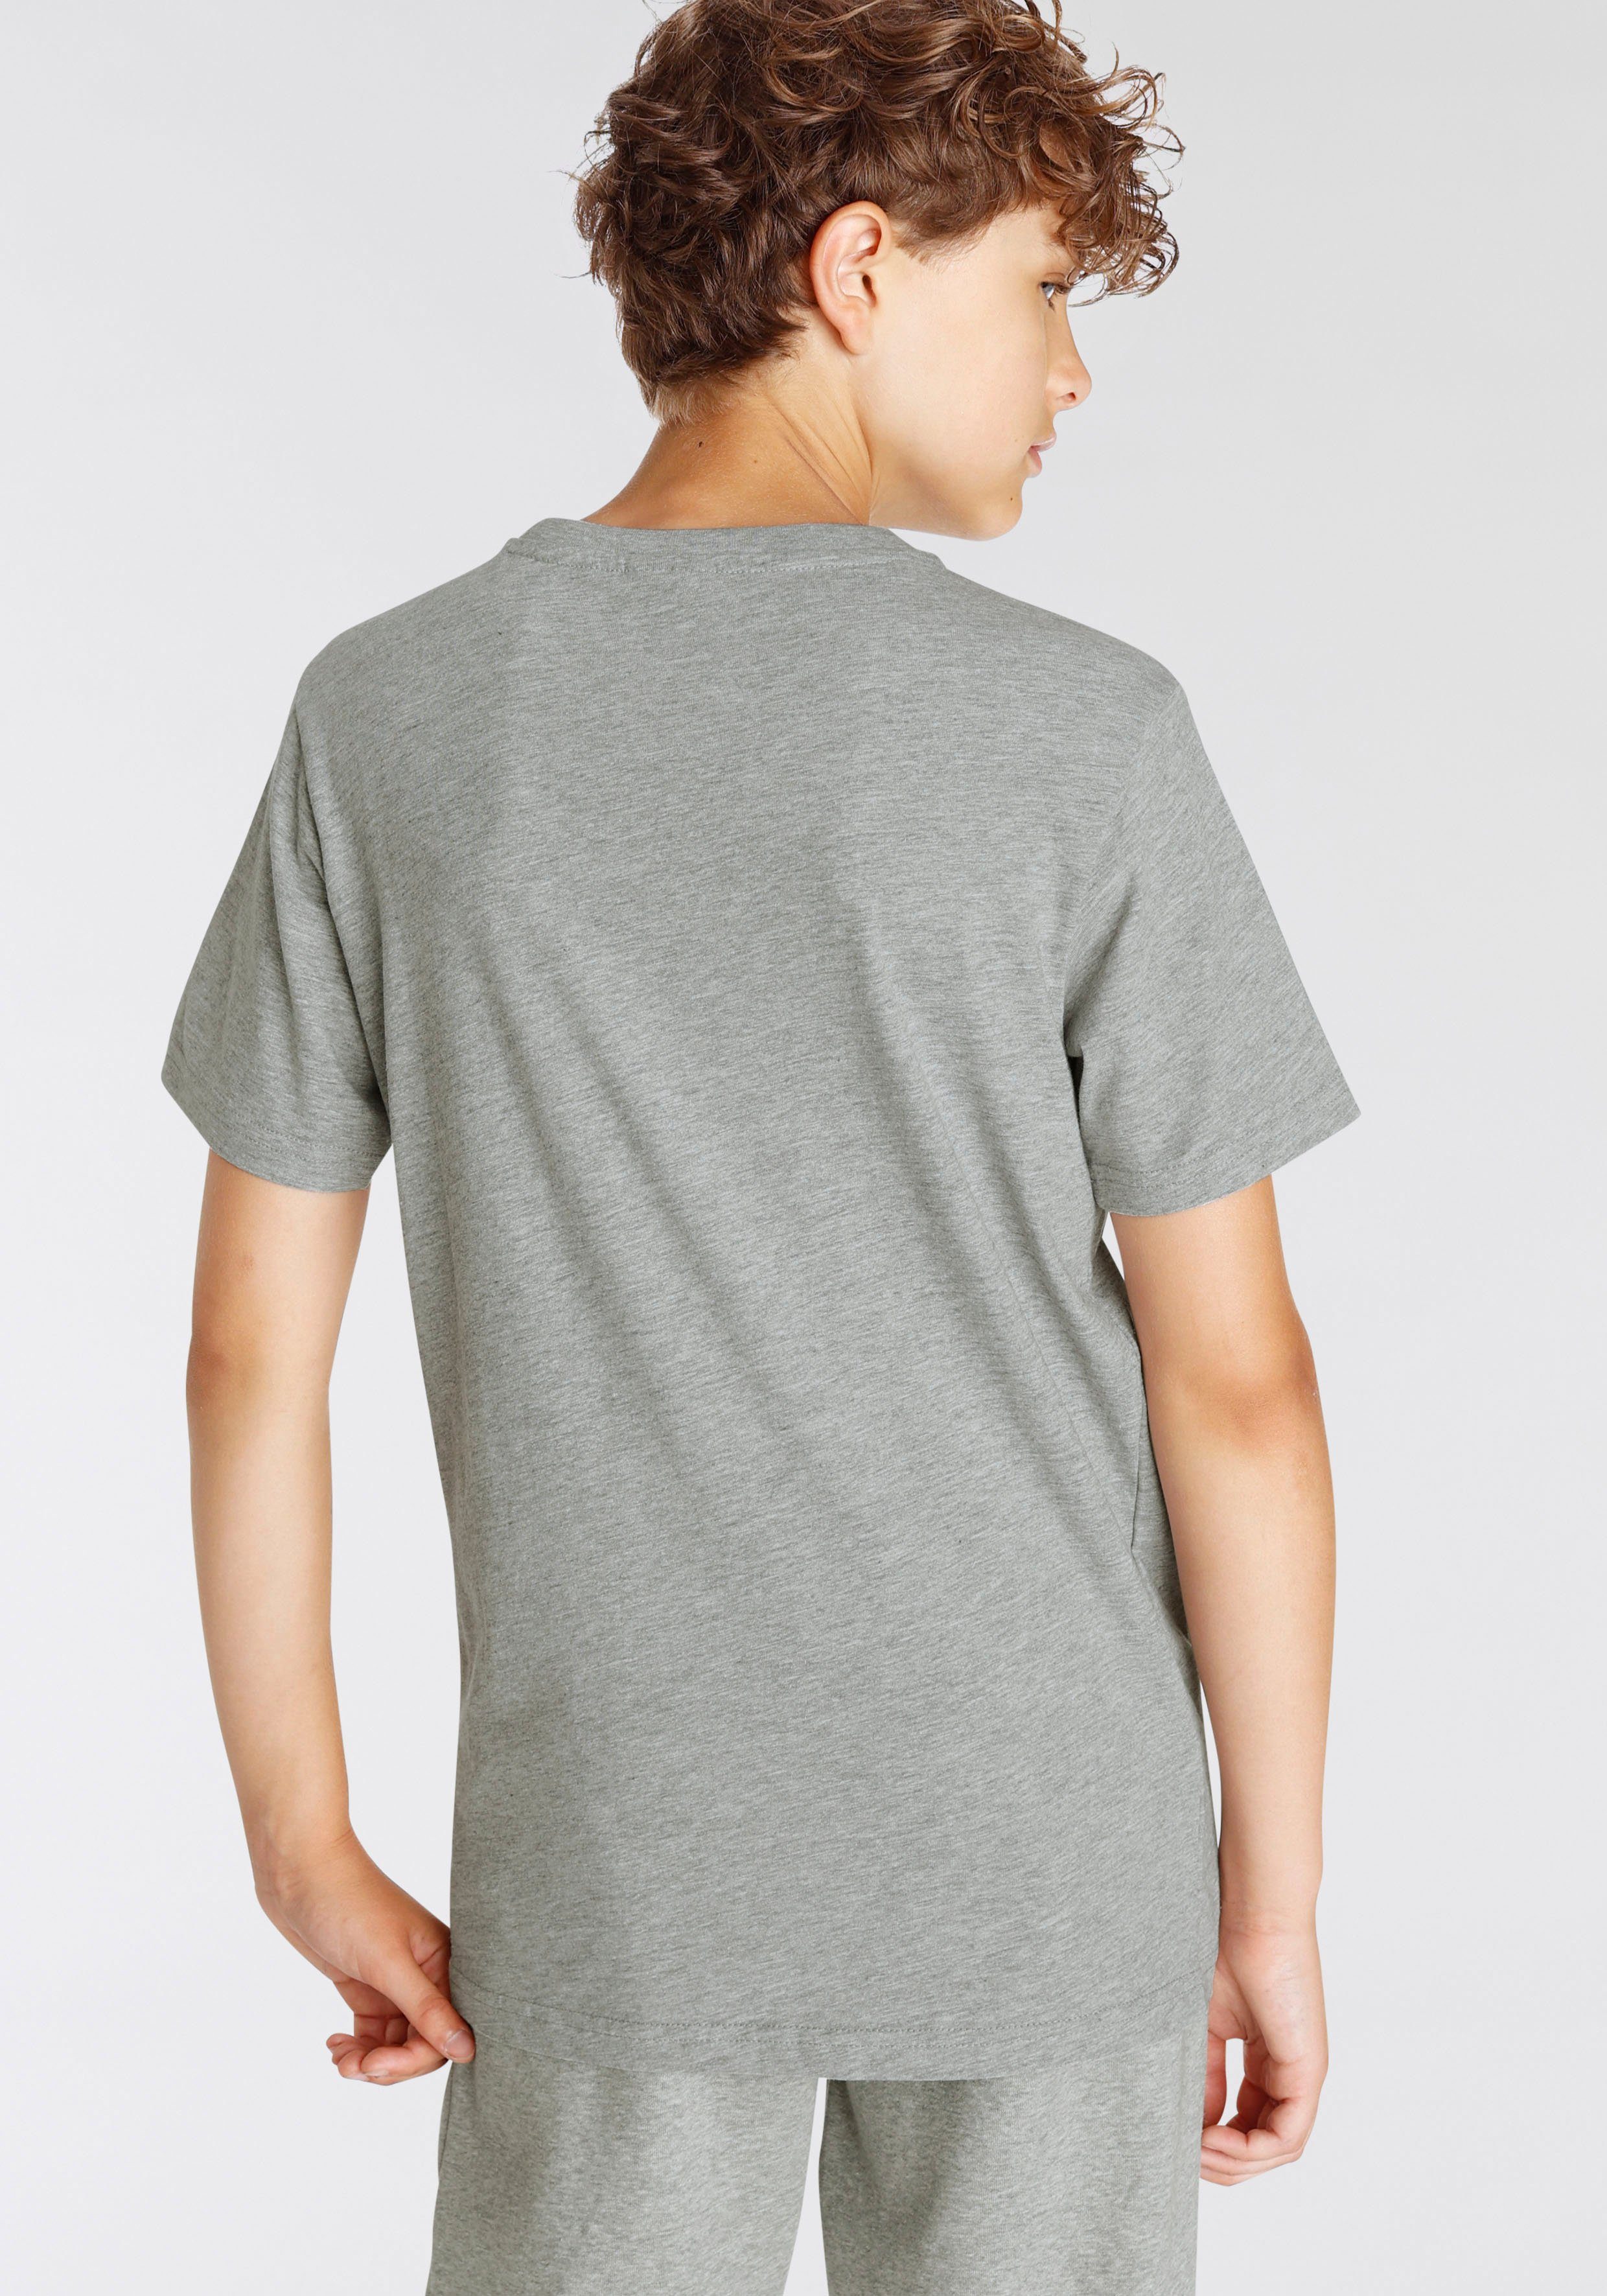 T-Shirt Crew-Neck Basic schwarz-grau 2pack für - 2-tlg) (Packung, Champion Kinder